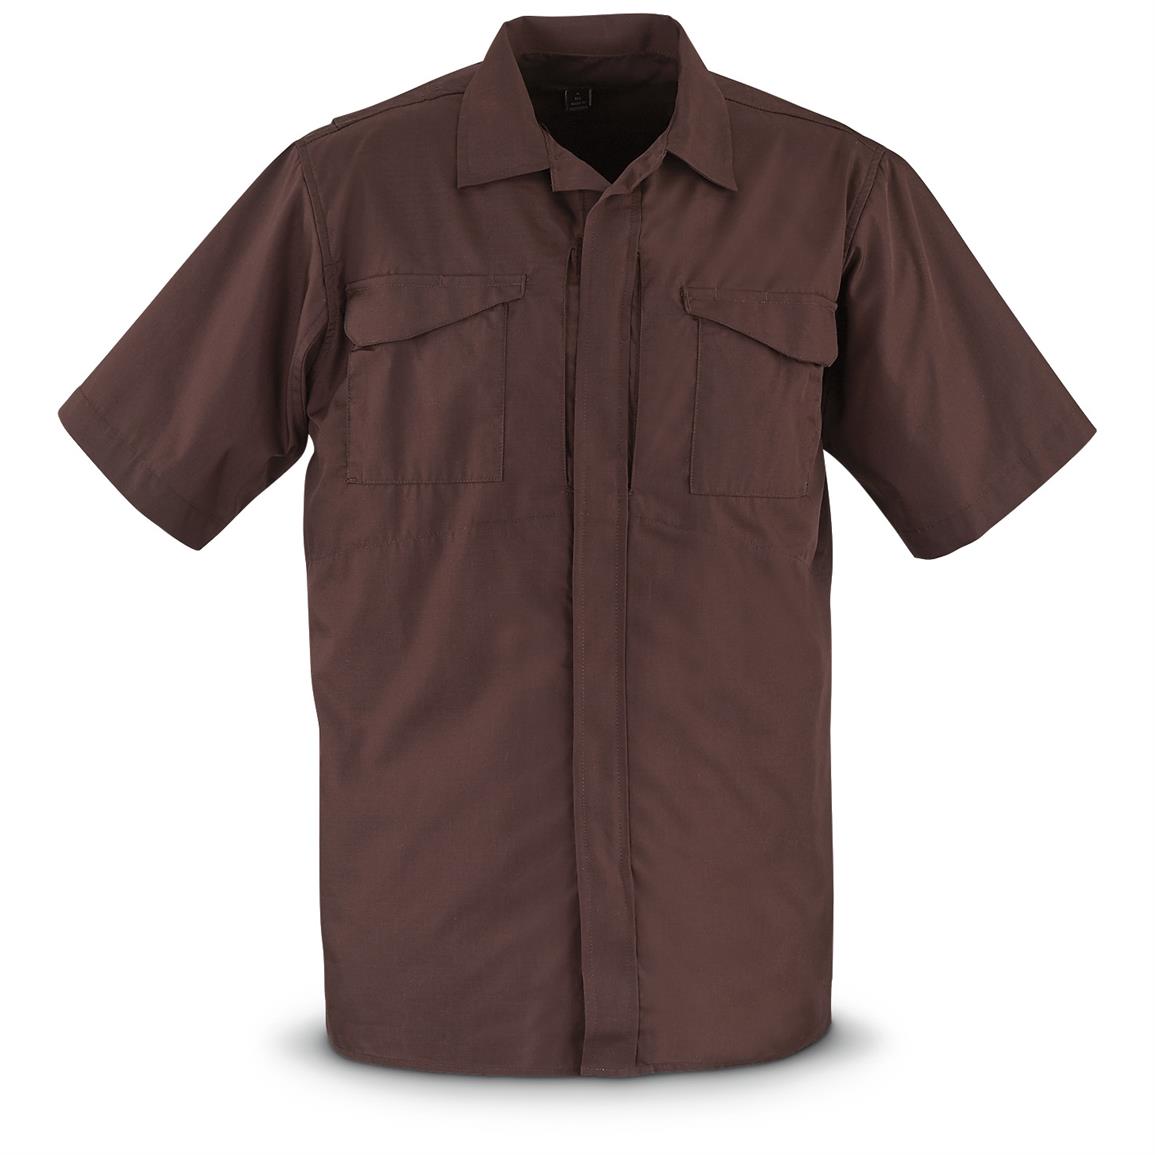 TRU-SPEC Men's Brown Uniform Short Sleeve Shirt, 2 Pack - 651599 ...